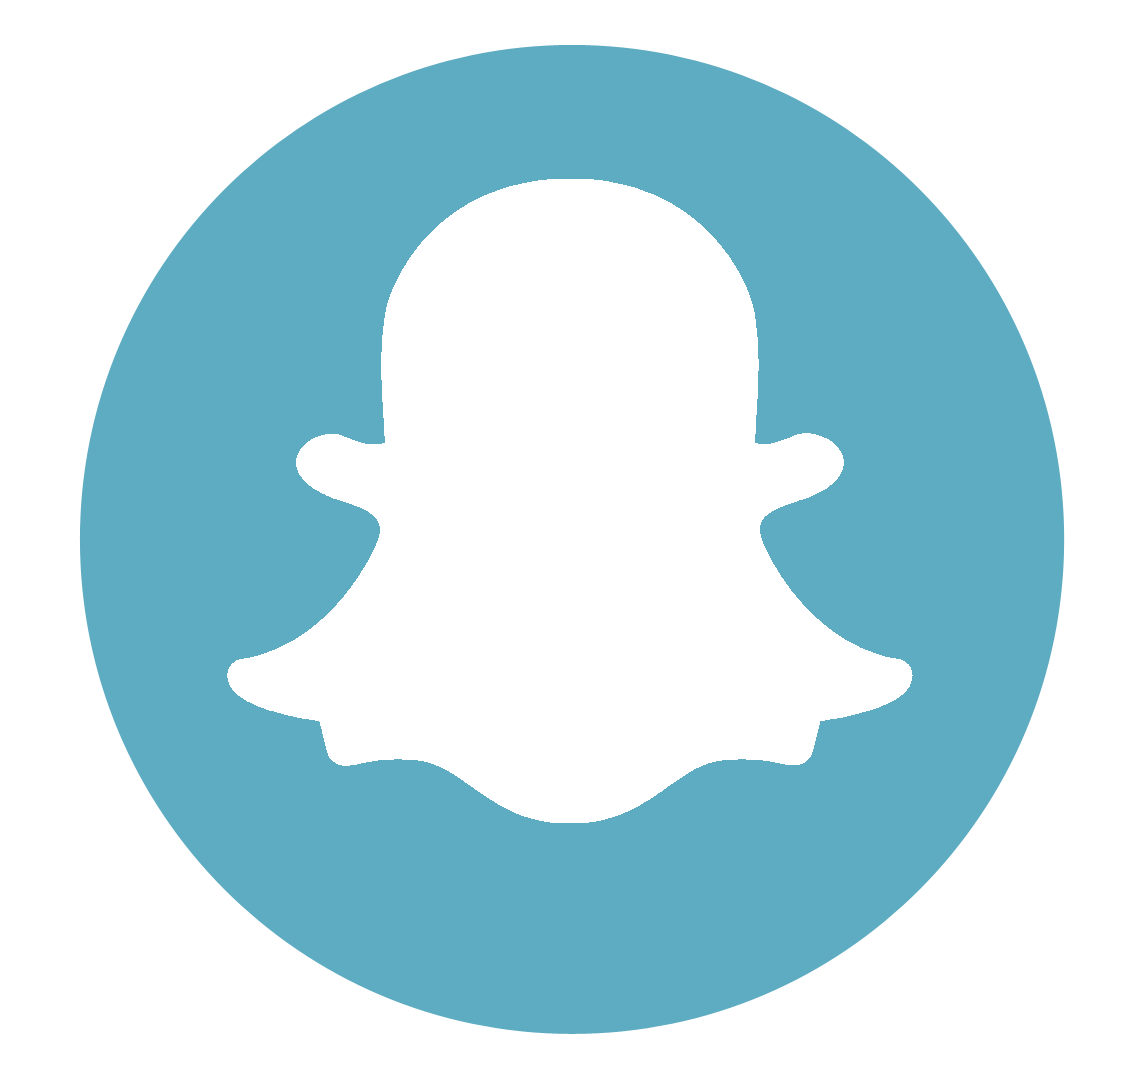 Download Icons Media Snapchat Computer Social Logo Hq Png Image Freepngimg